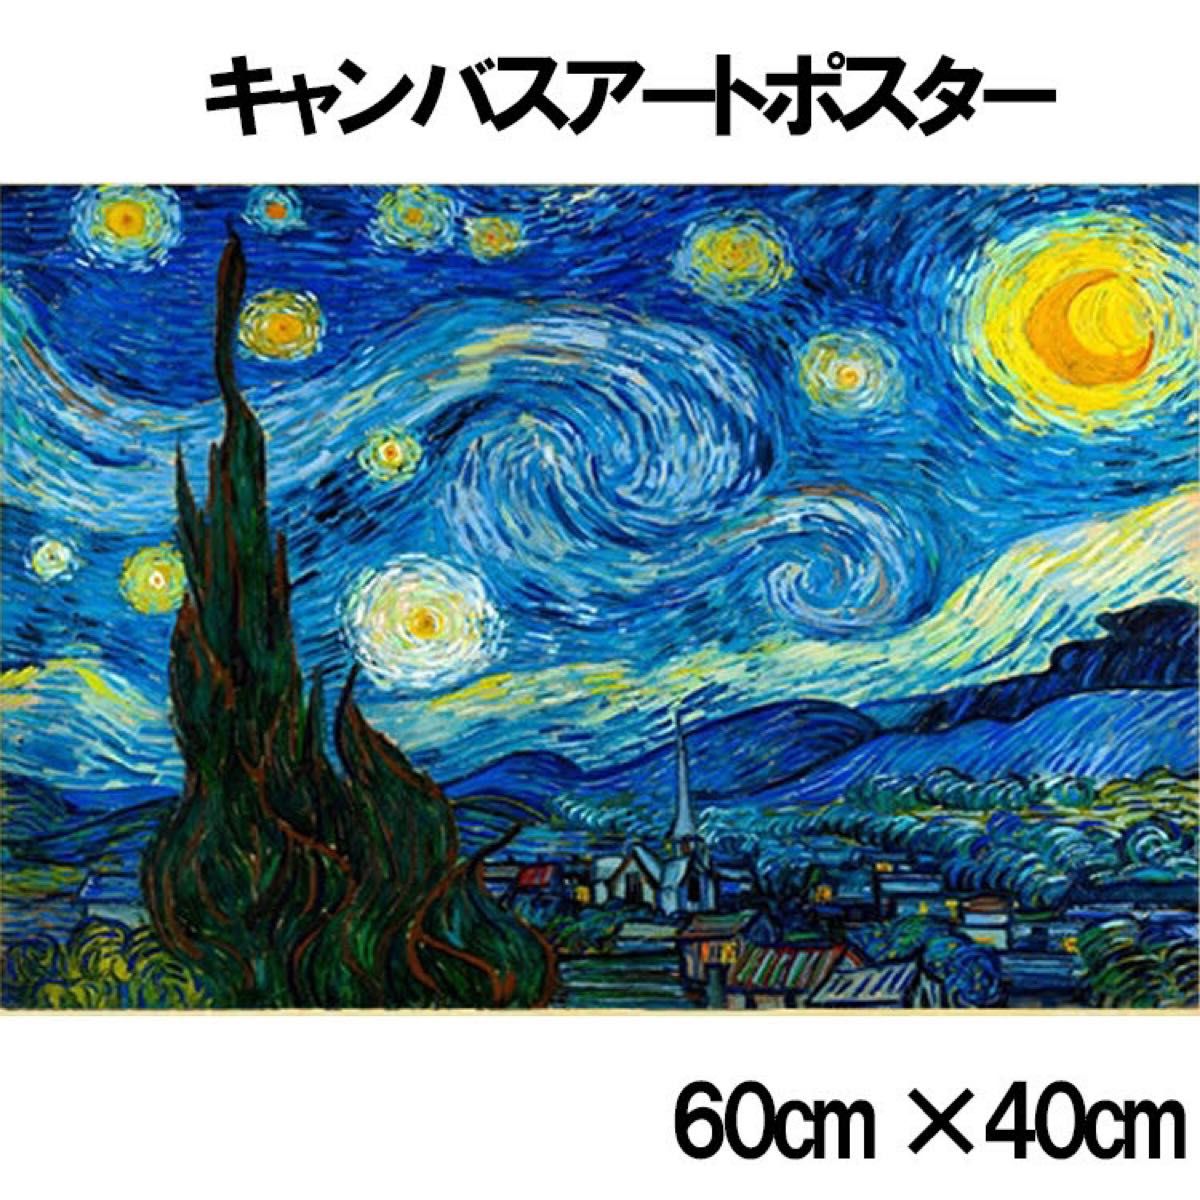 ゴッホ アート ポスター 星月夜 絵画 キャンバス地 複製画 40x60cm